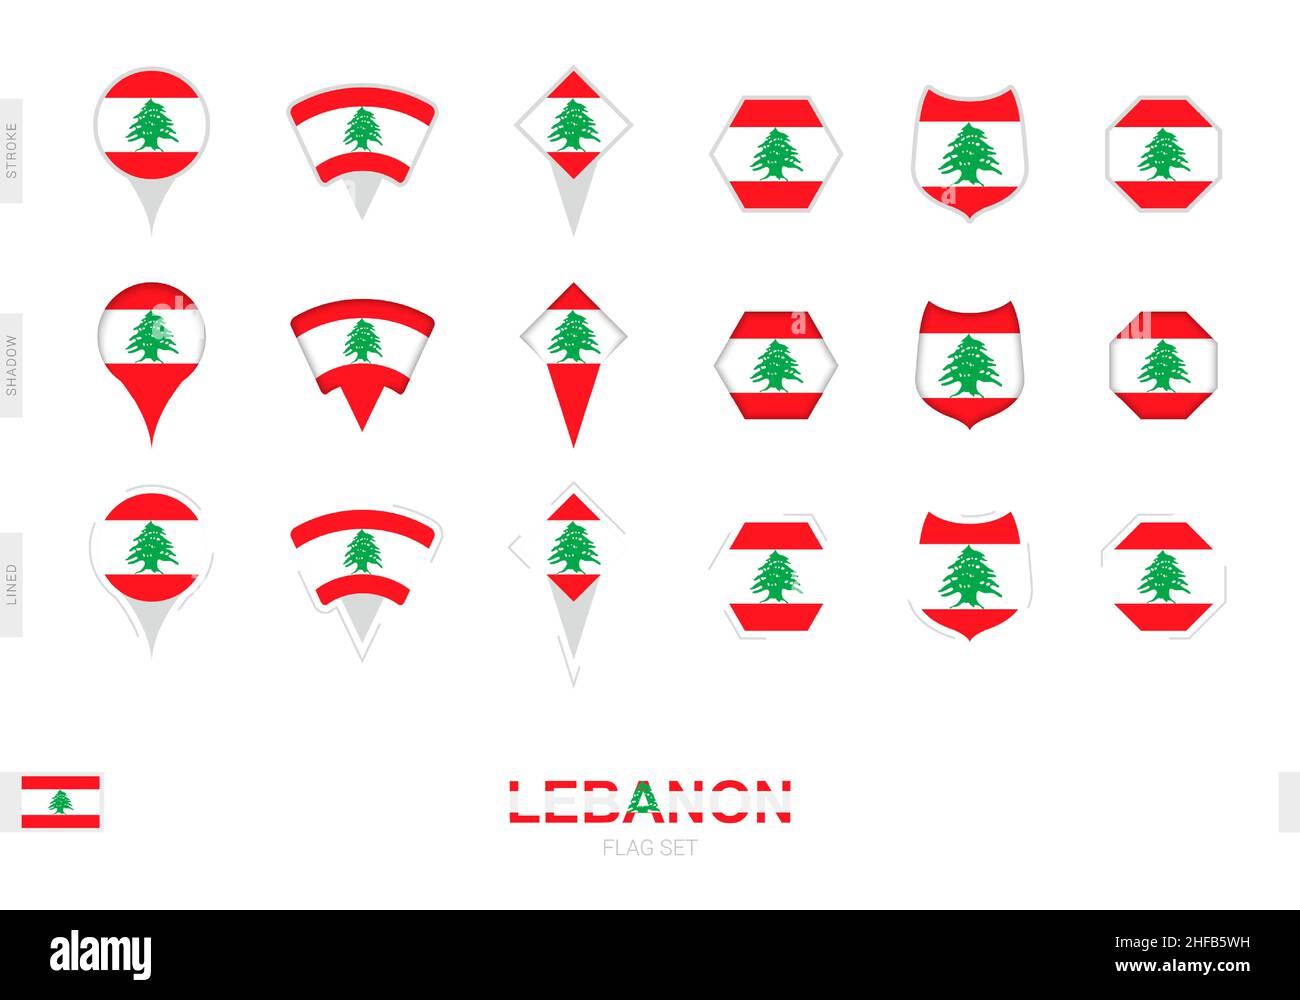 Collection du drapeau libanais de formes différentes et avec trois effets différents.Ensemble d'indicateurs vectoriels. Illustration de Vecteur